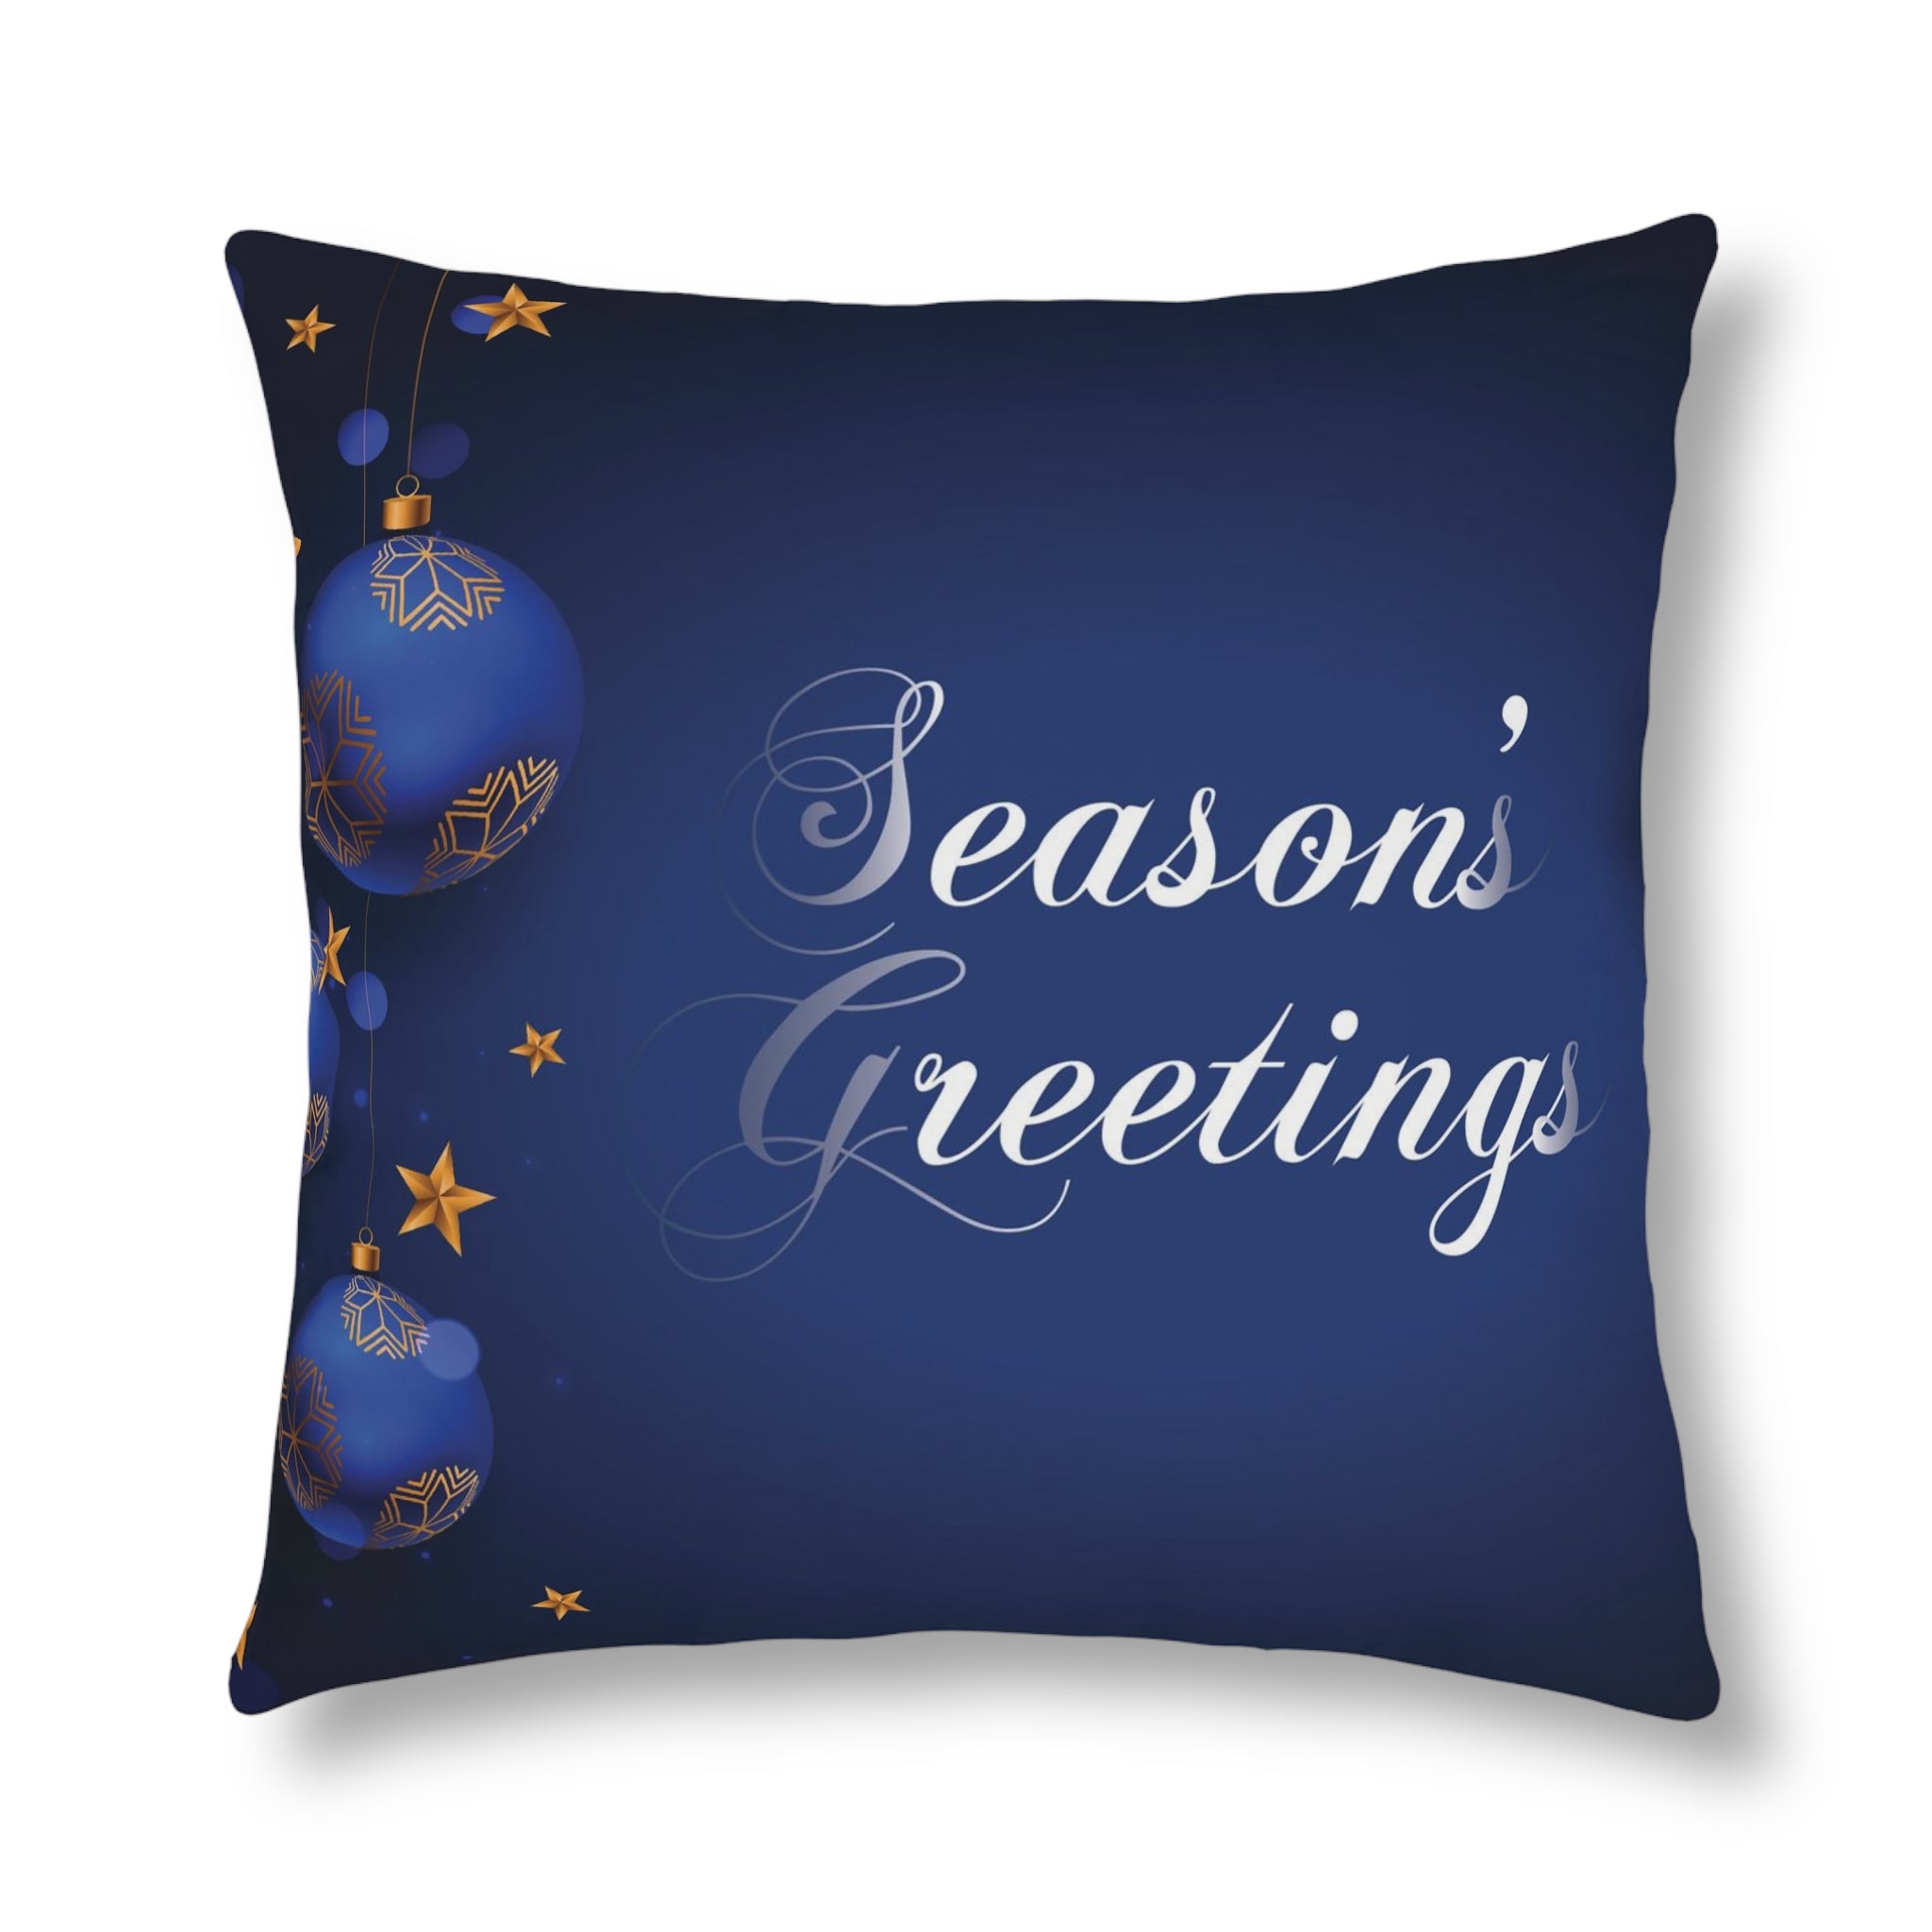 Christmas Waterproof Pillows, Dark Blue